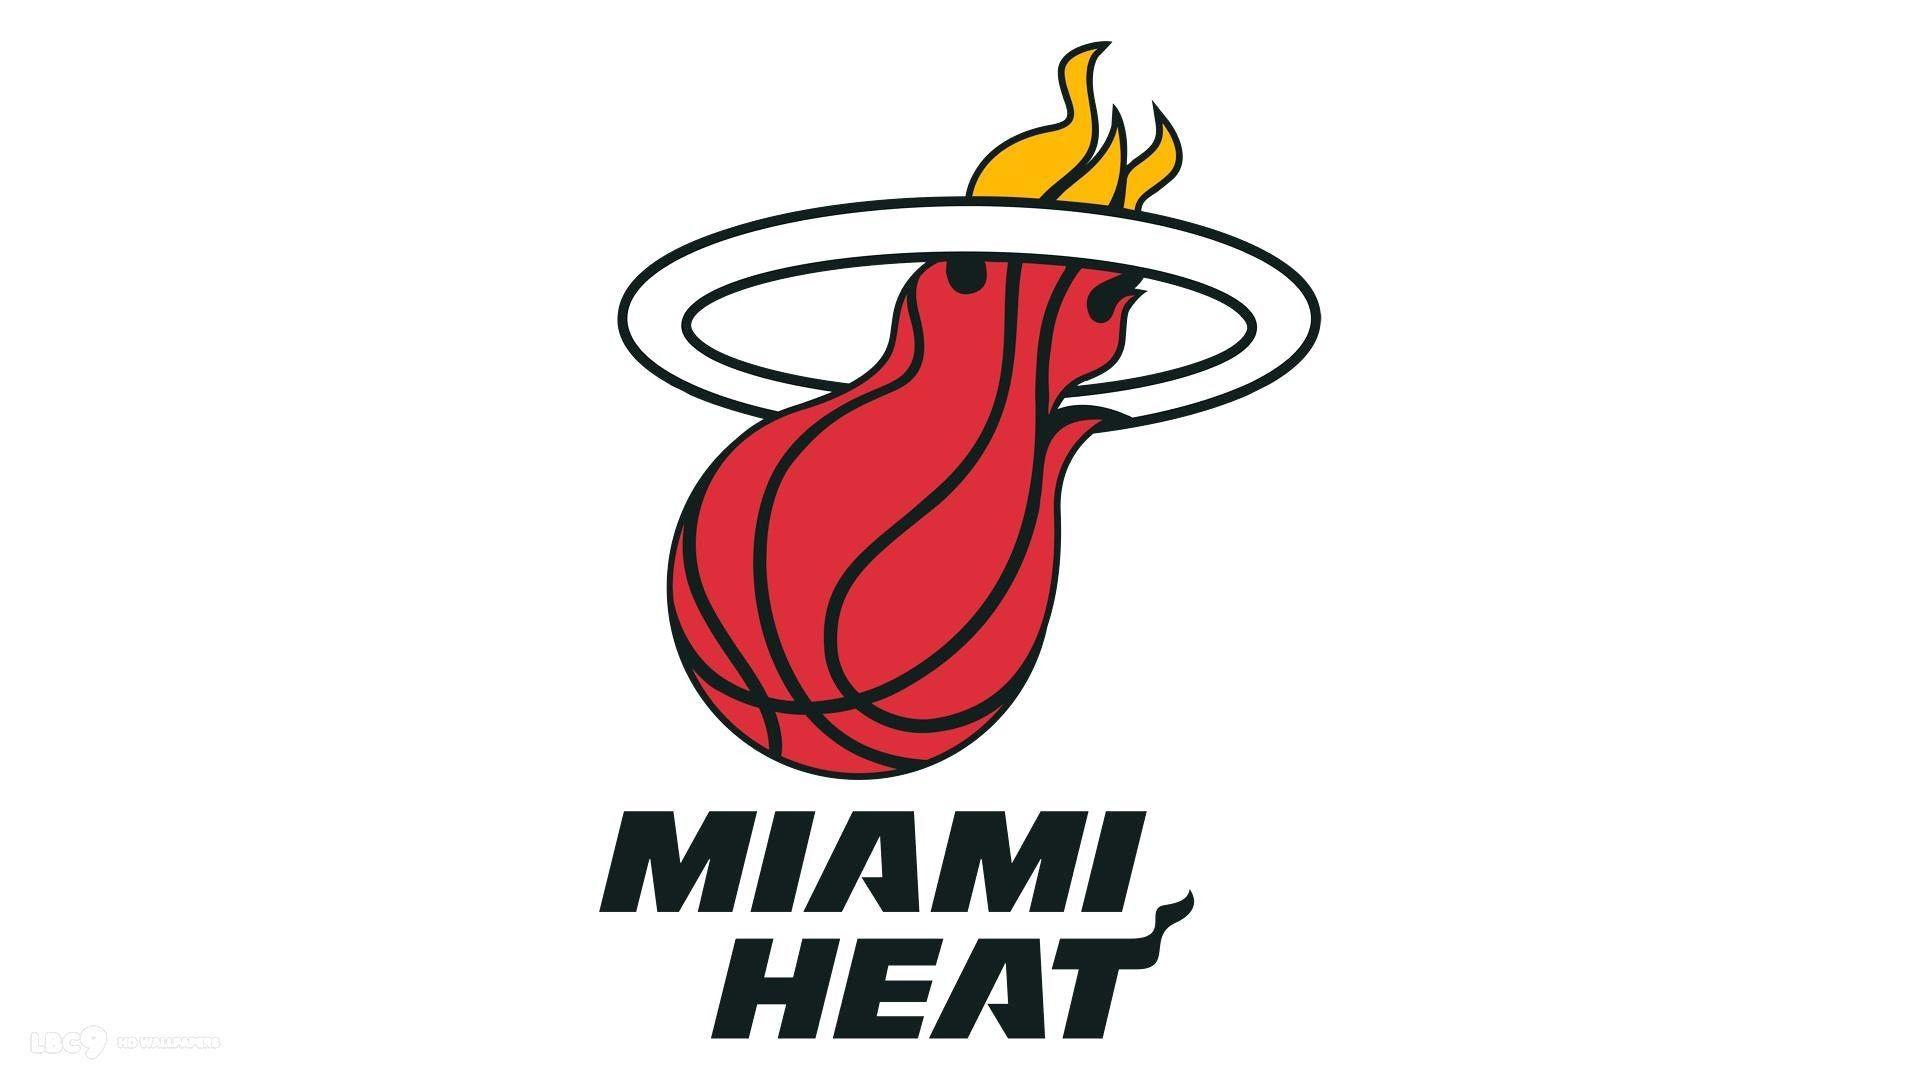 Miami Heat Wallpapers - Top Free Miami